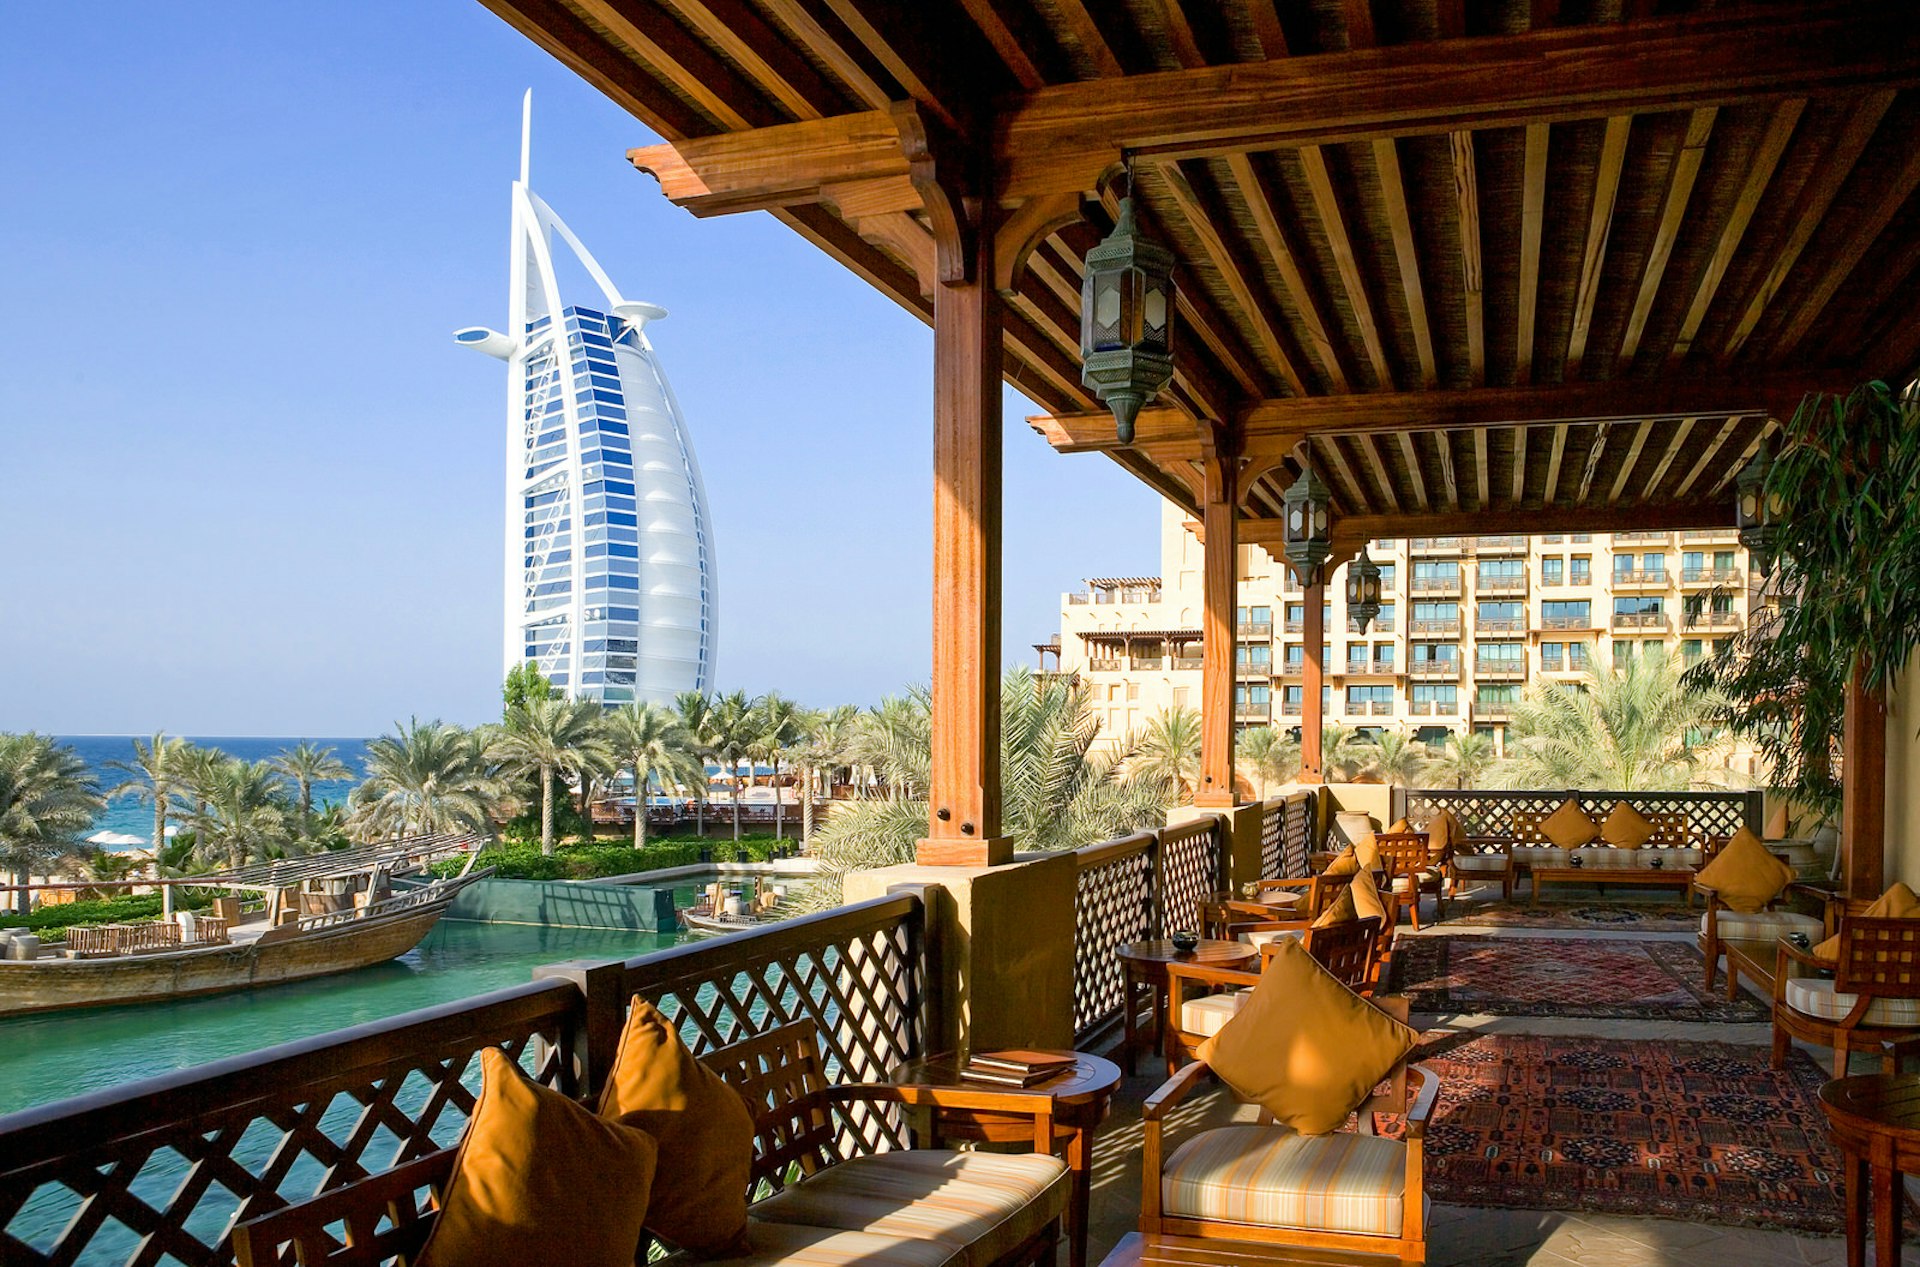 Restaurang med utsikt över Burj Al Arab i Dubai.  Bilden är tagen från en lackad träbalkong dekorerad med vävda mattor och dyna sittplatser i trä. 